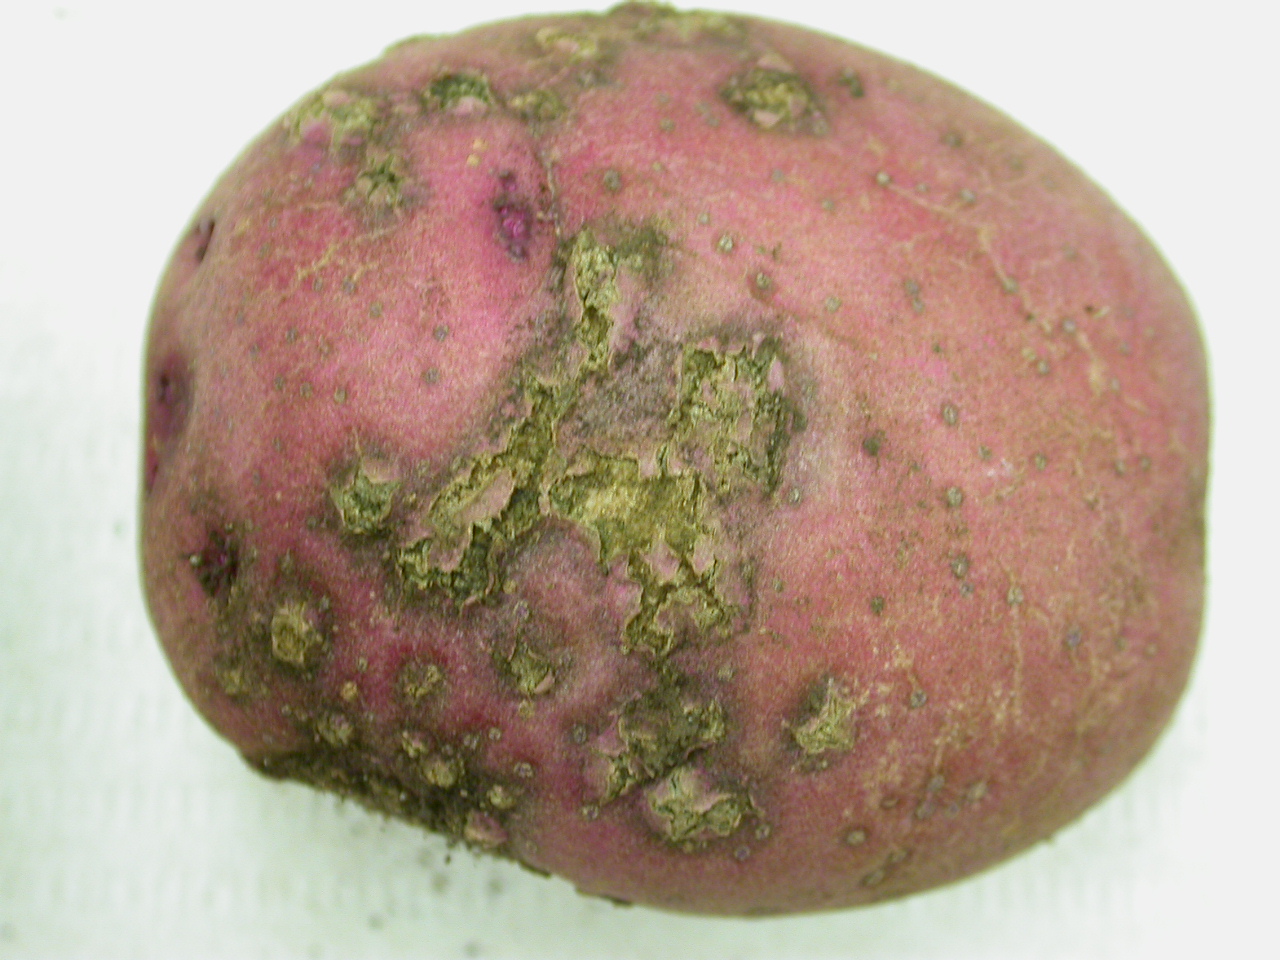 potato with powdery scab